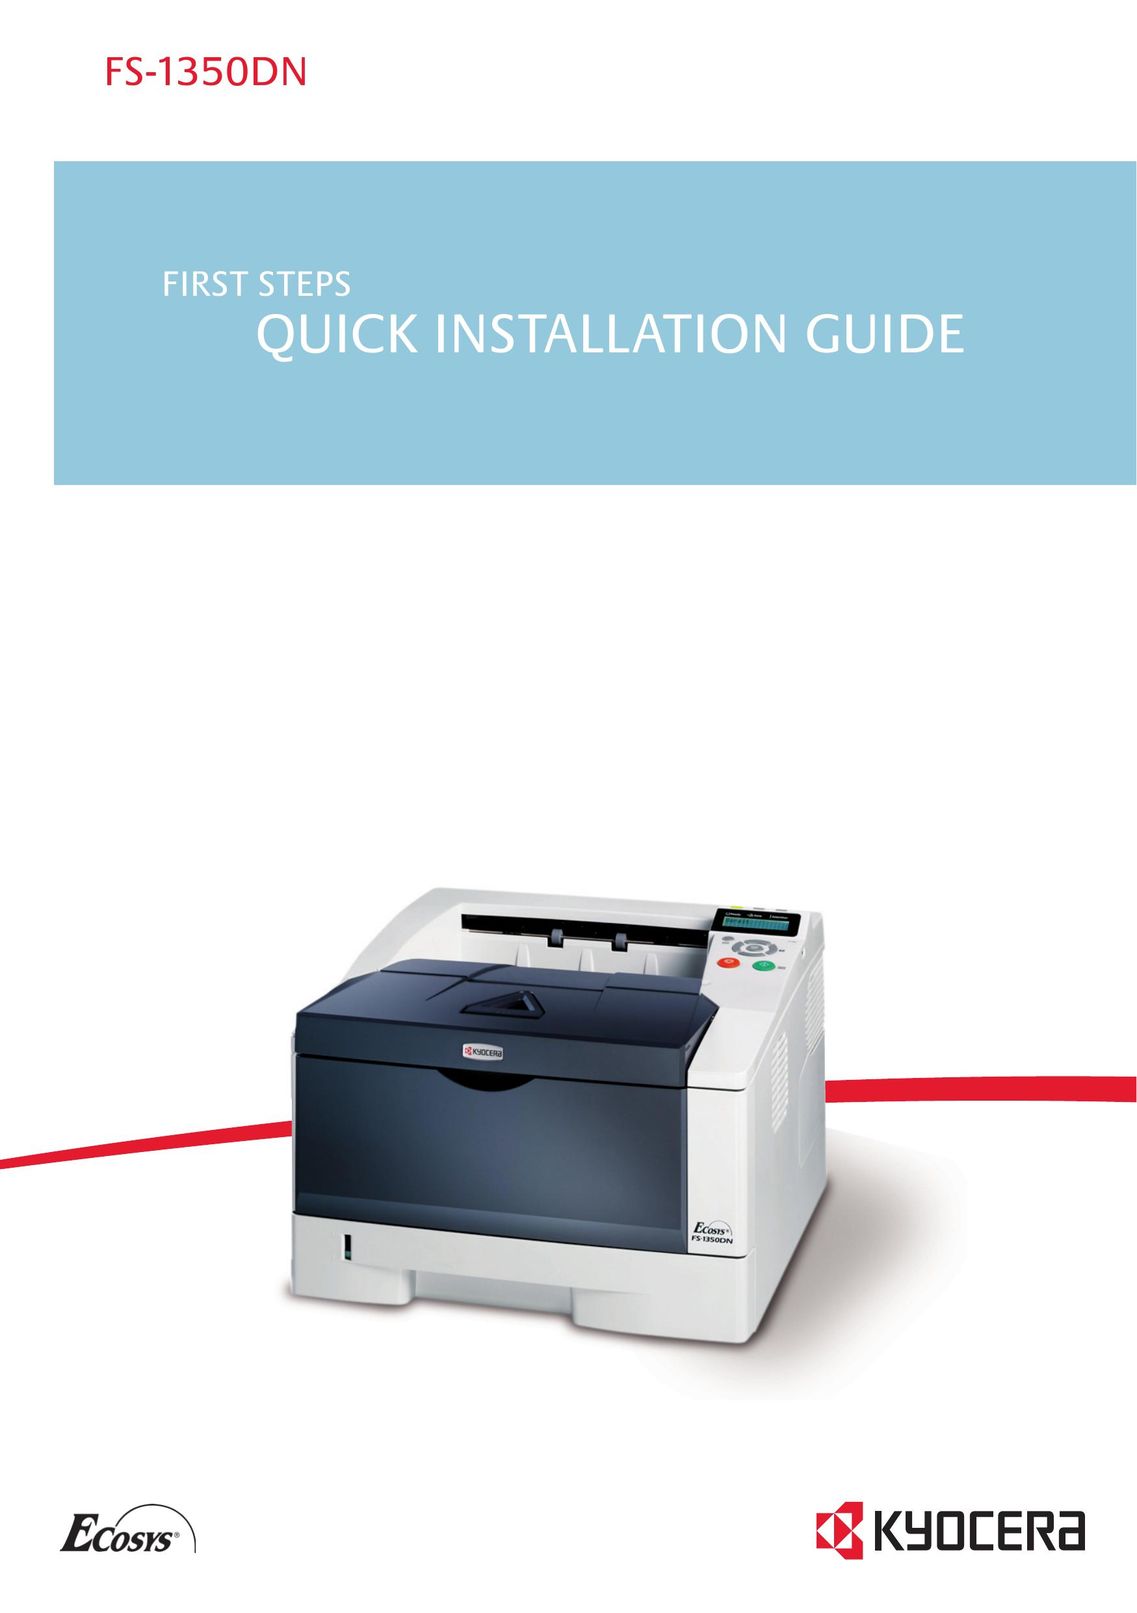 Kyocera FS-1350DN Printer User Manual